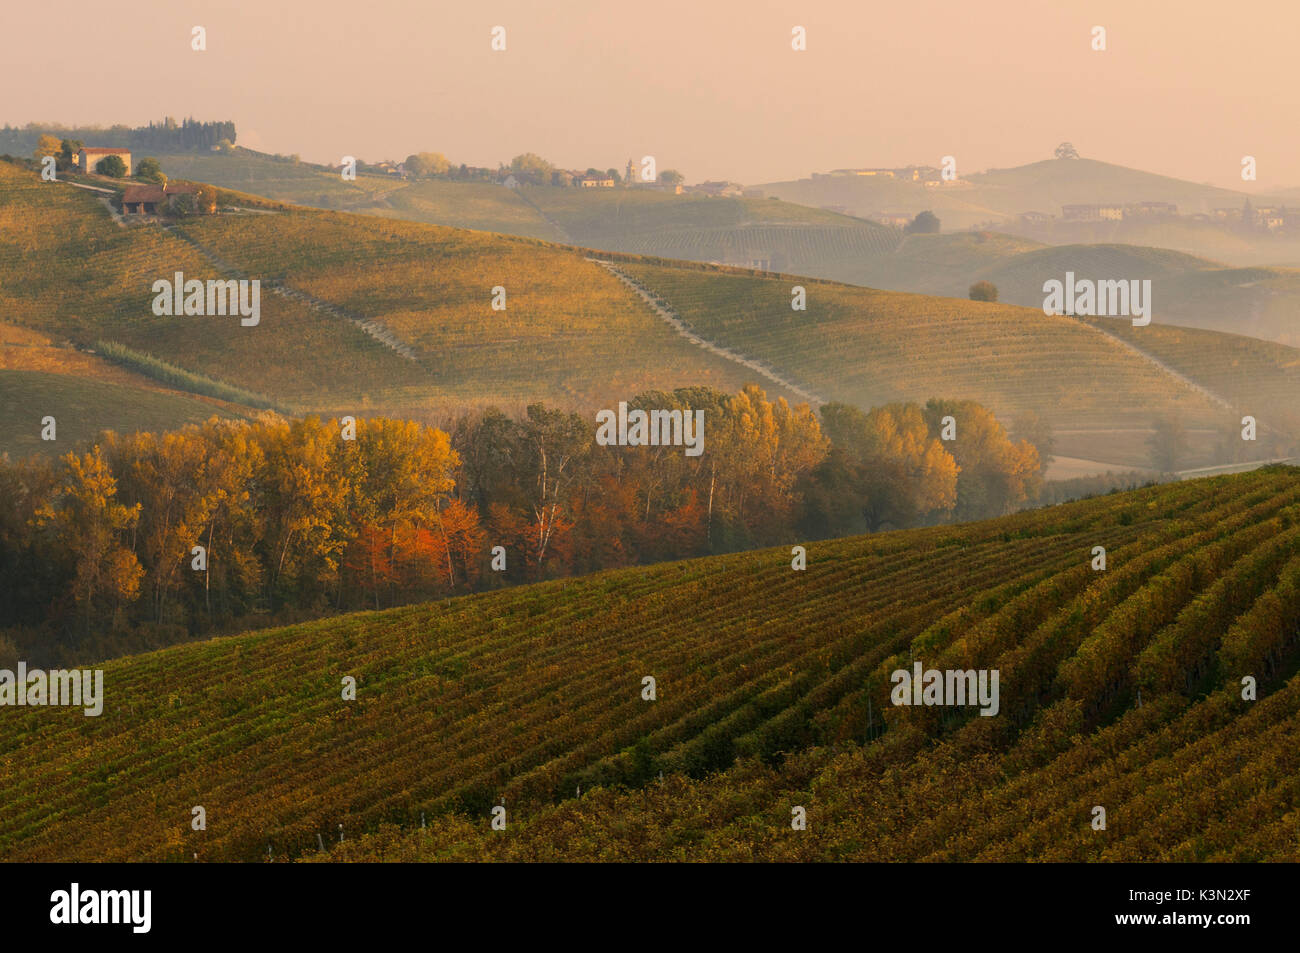 Italia, Piamonte, distrito de Cuneo, Langhe - Amanecer otoñal Foto de stock